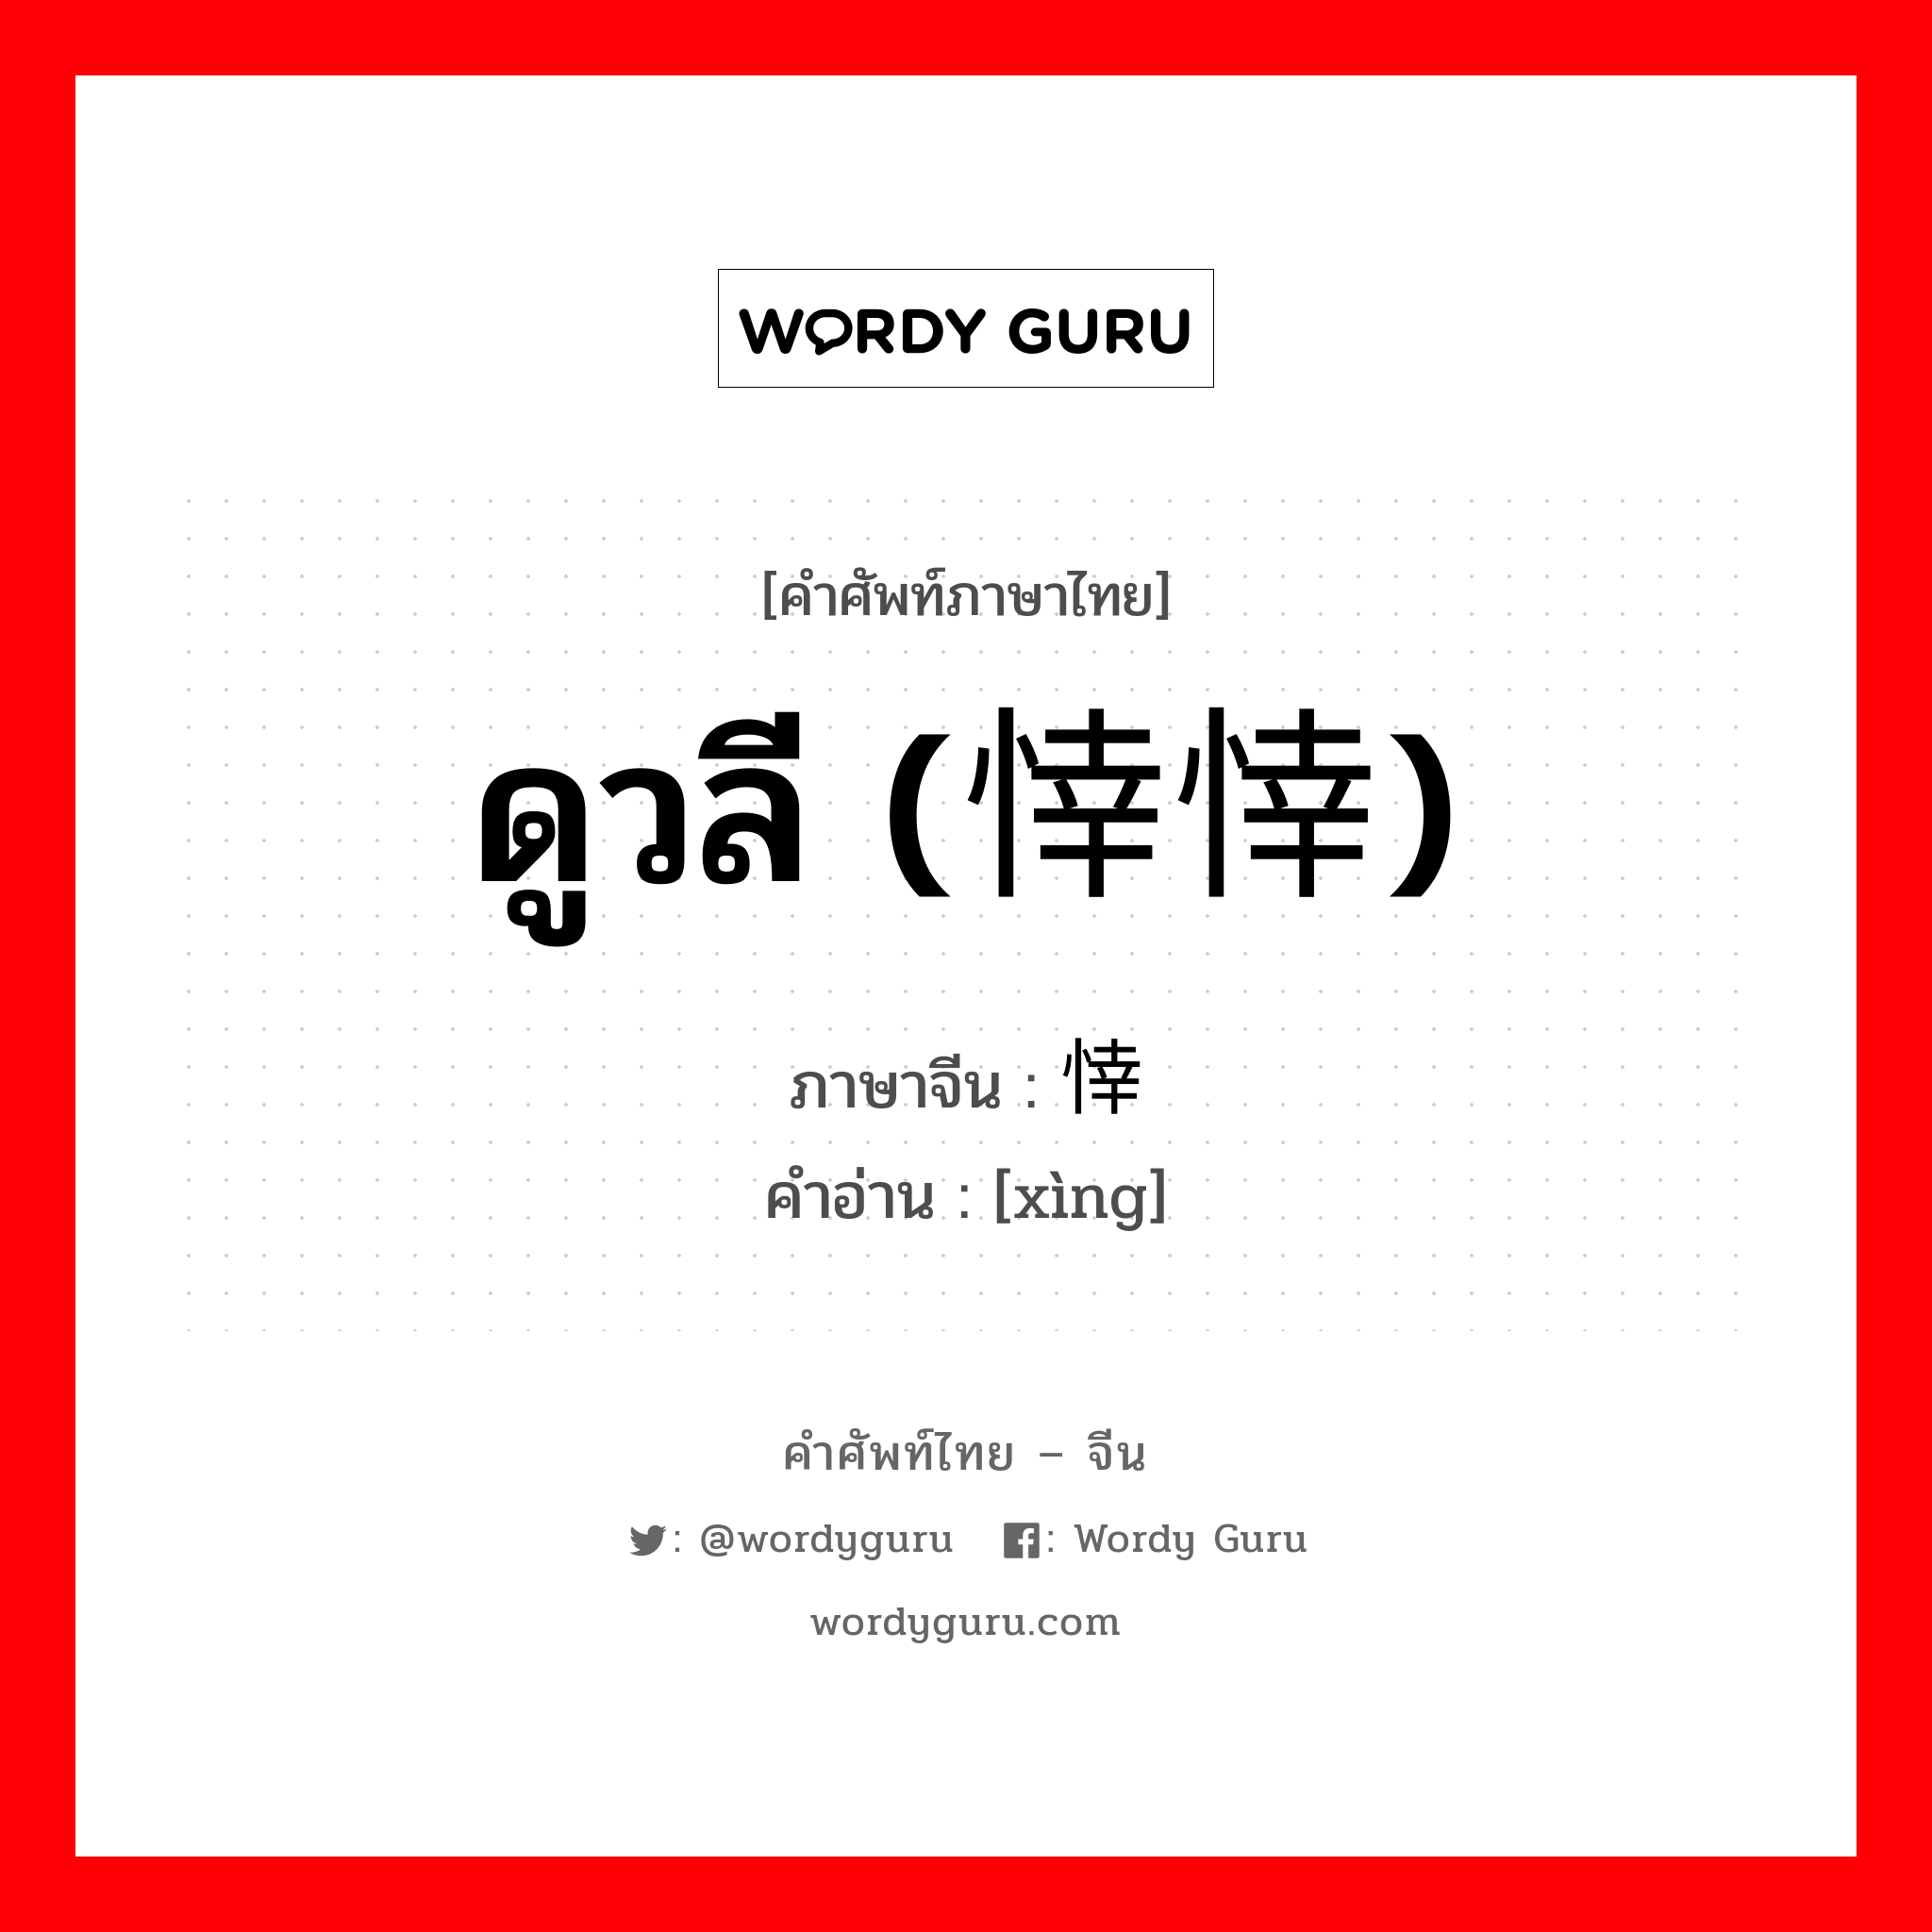 ดูวลี (悻悻) ภาษาจีนคืออะไร, คำศัพท์ภาษาไทย - จีน ดูวลี (悻悻) ภาษาจีน 悻 คำอ่าน [xìng]